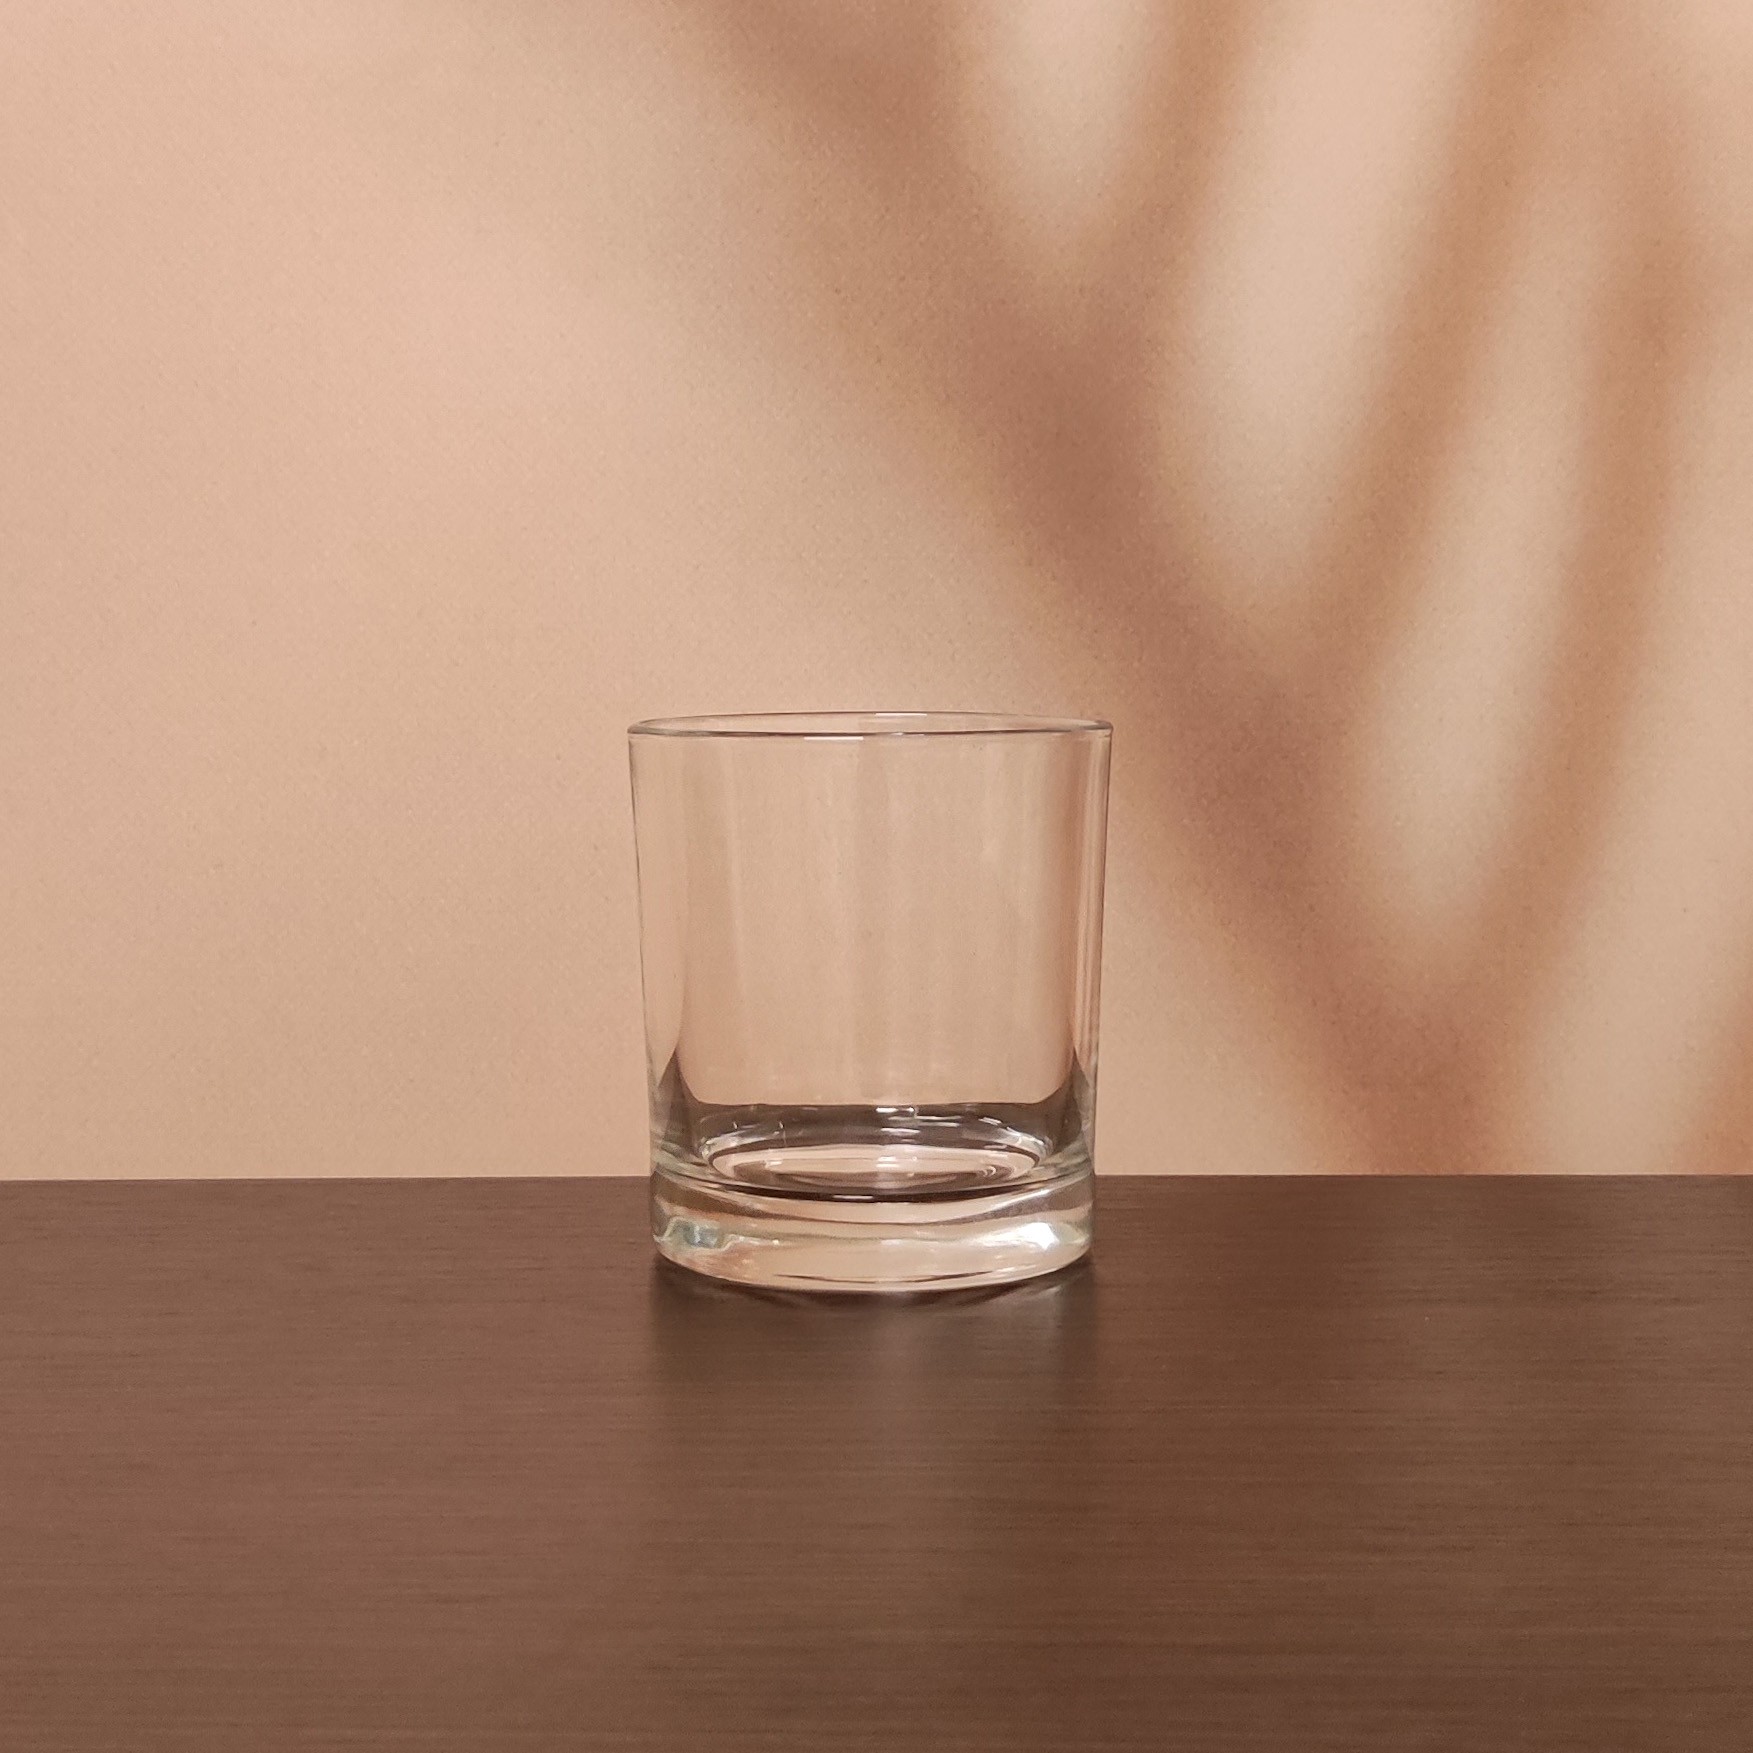 Підсвічник скляний, h 8 см, Ø 8 см.